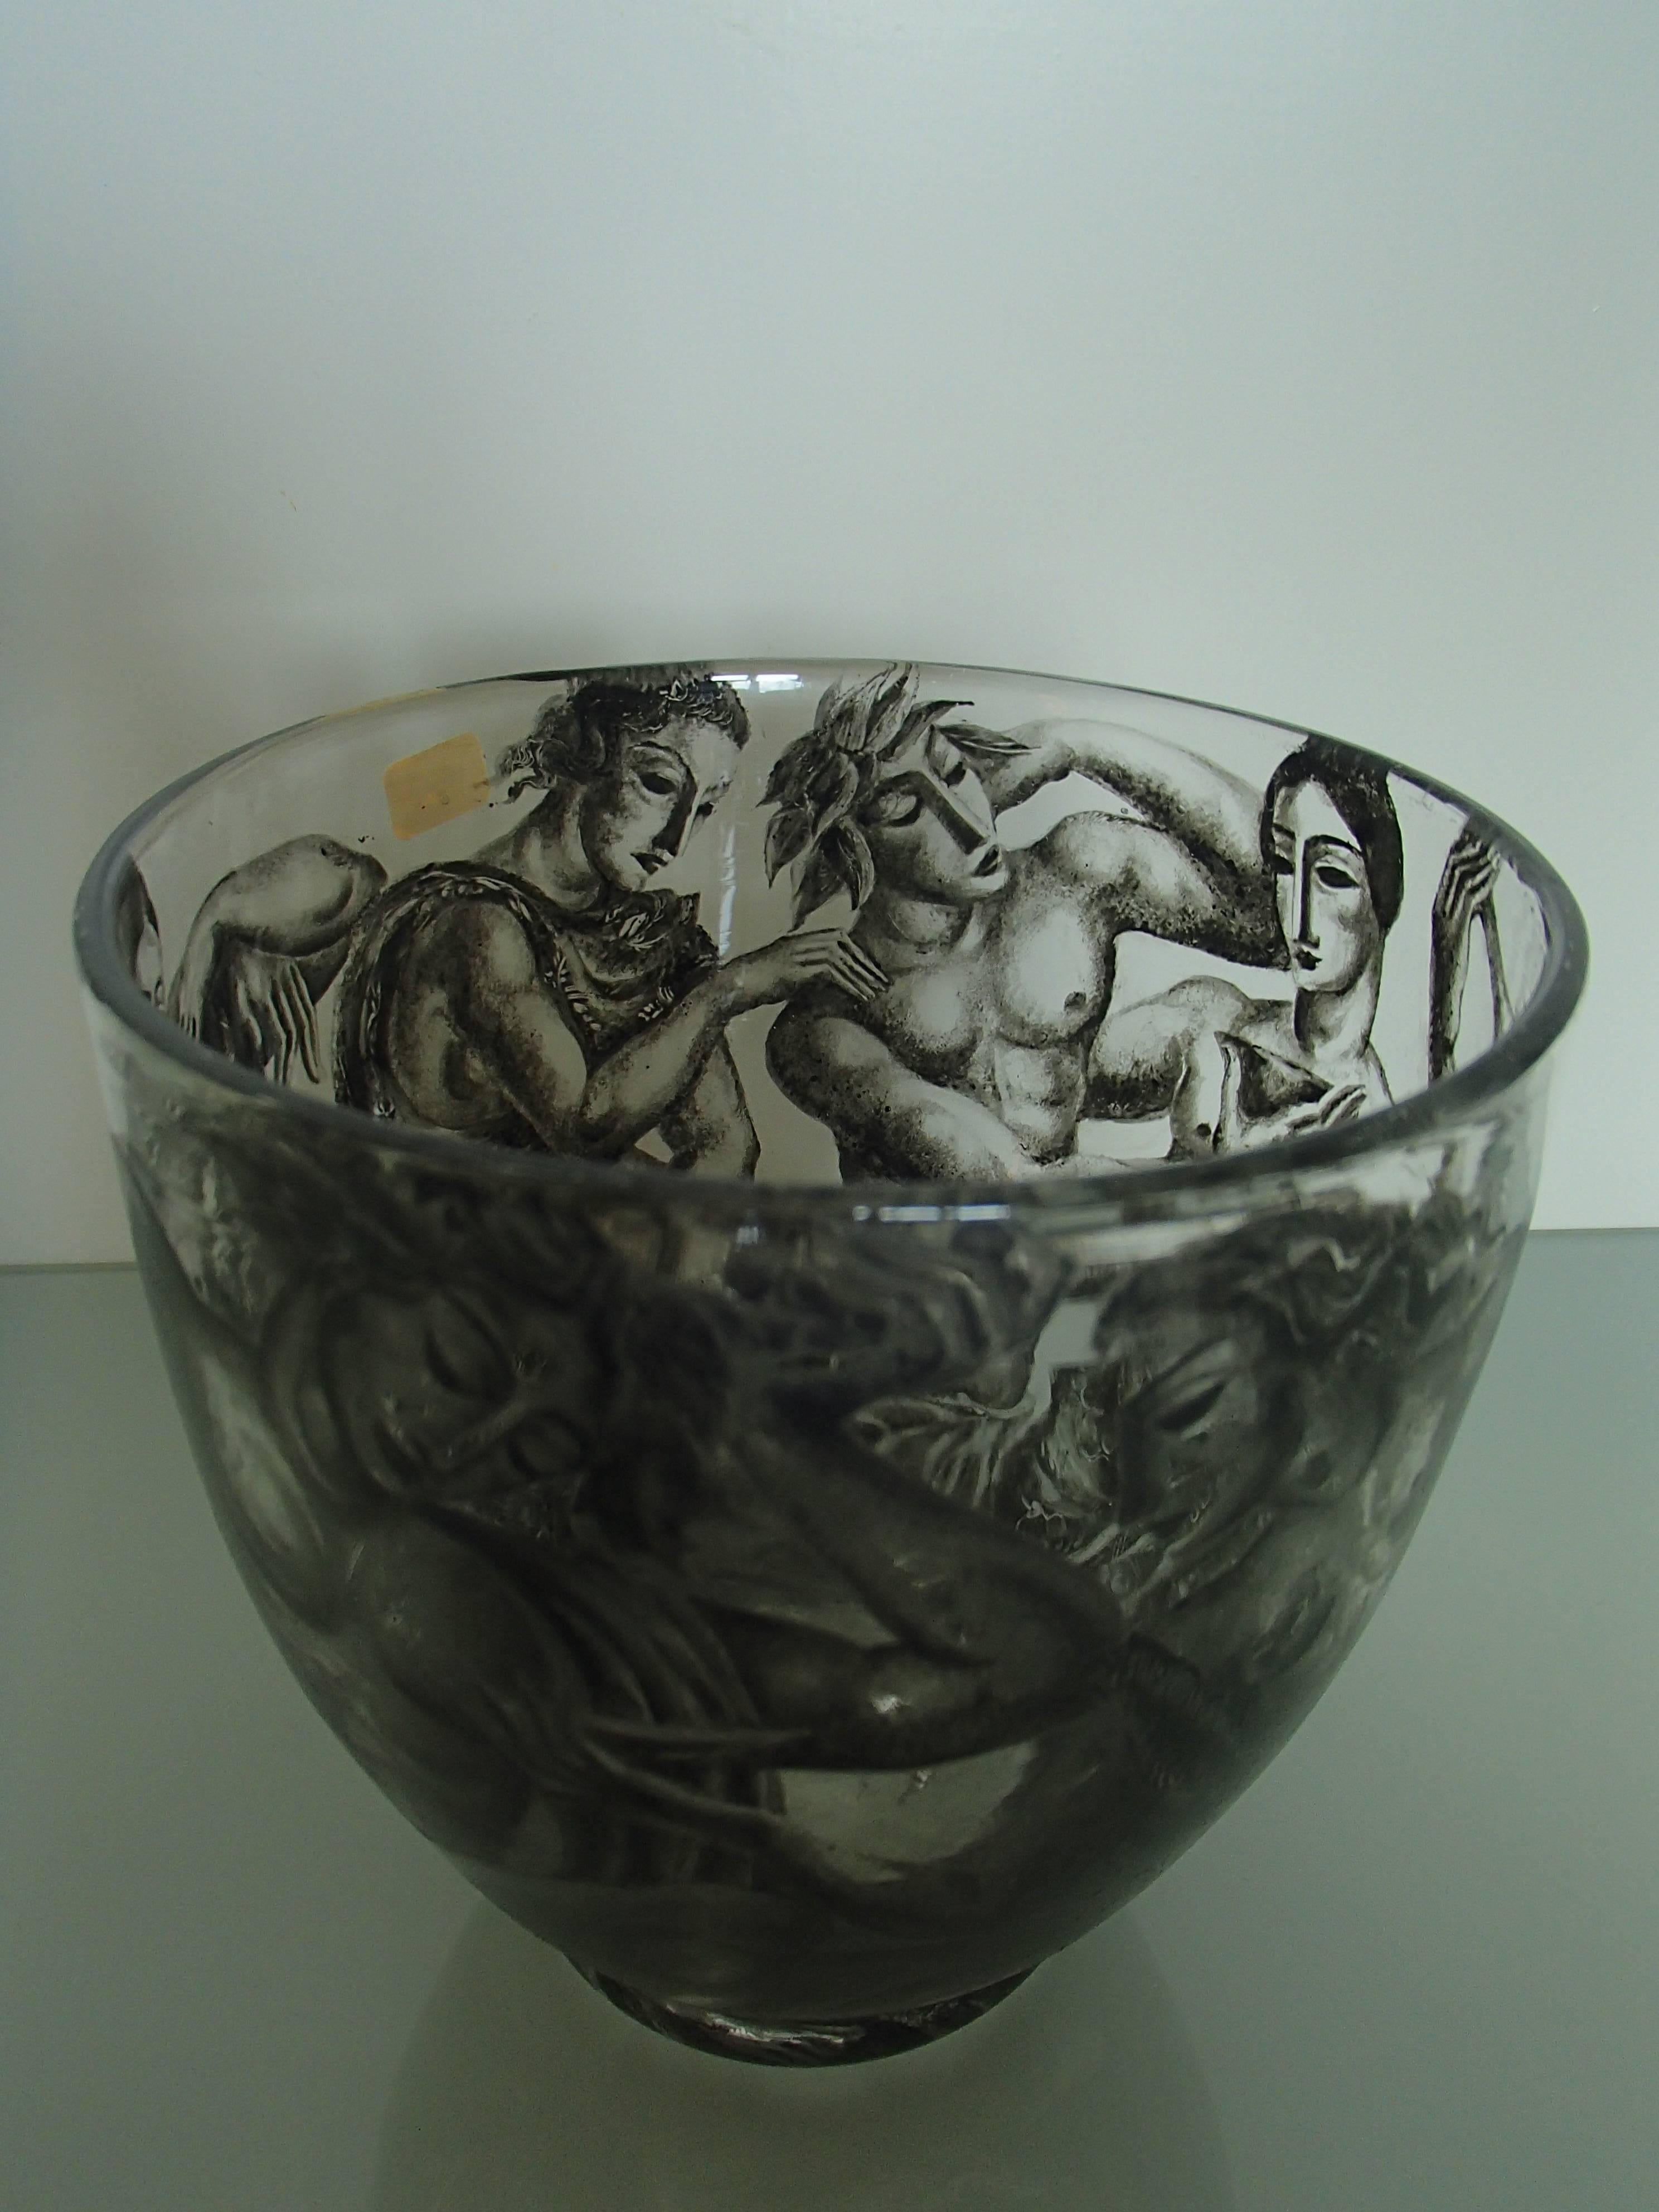 German Bauhaus bowl with black cubistic greac romain figures 